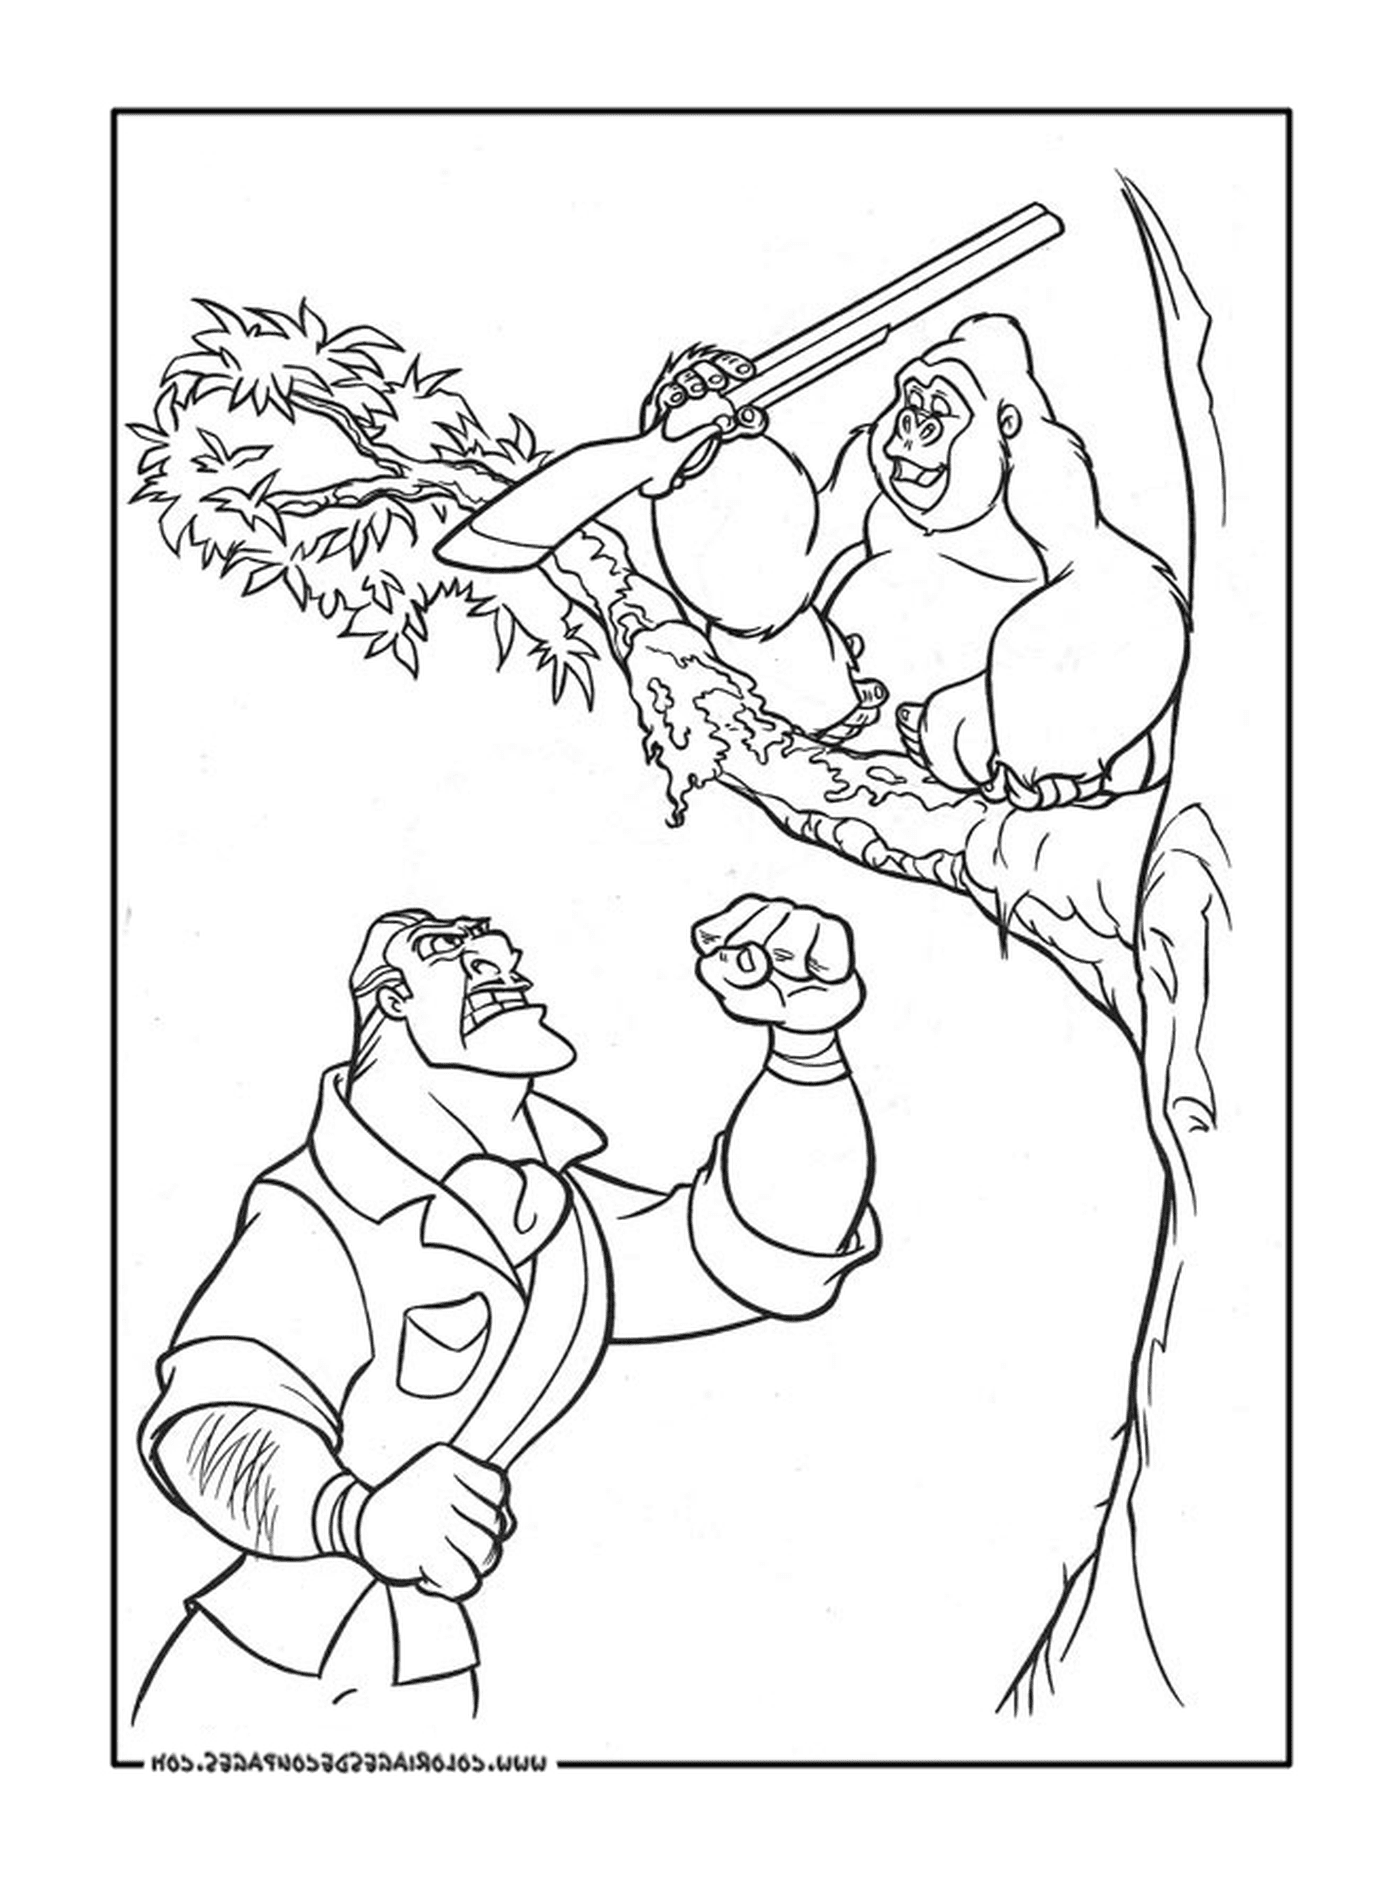  Человек и горилла на дереве 